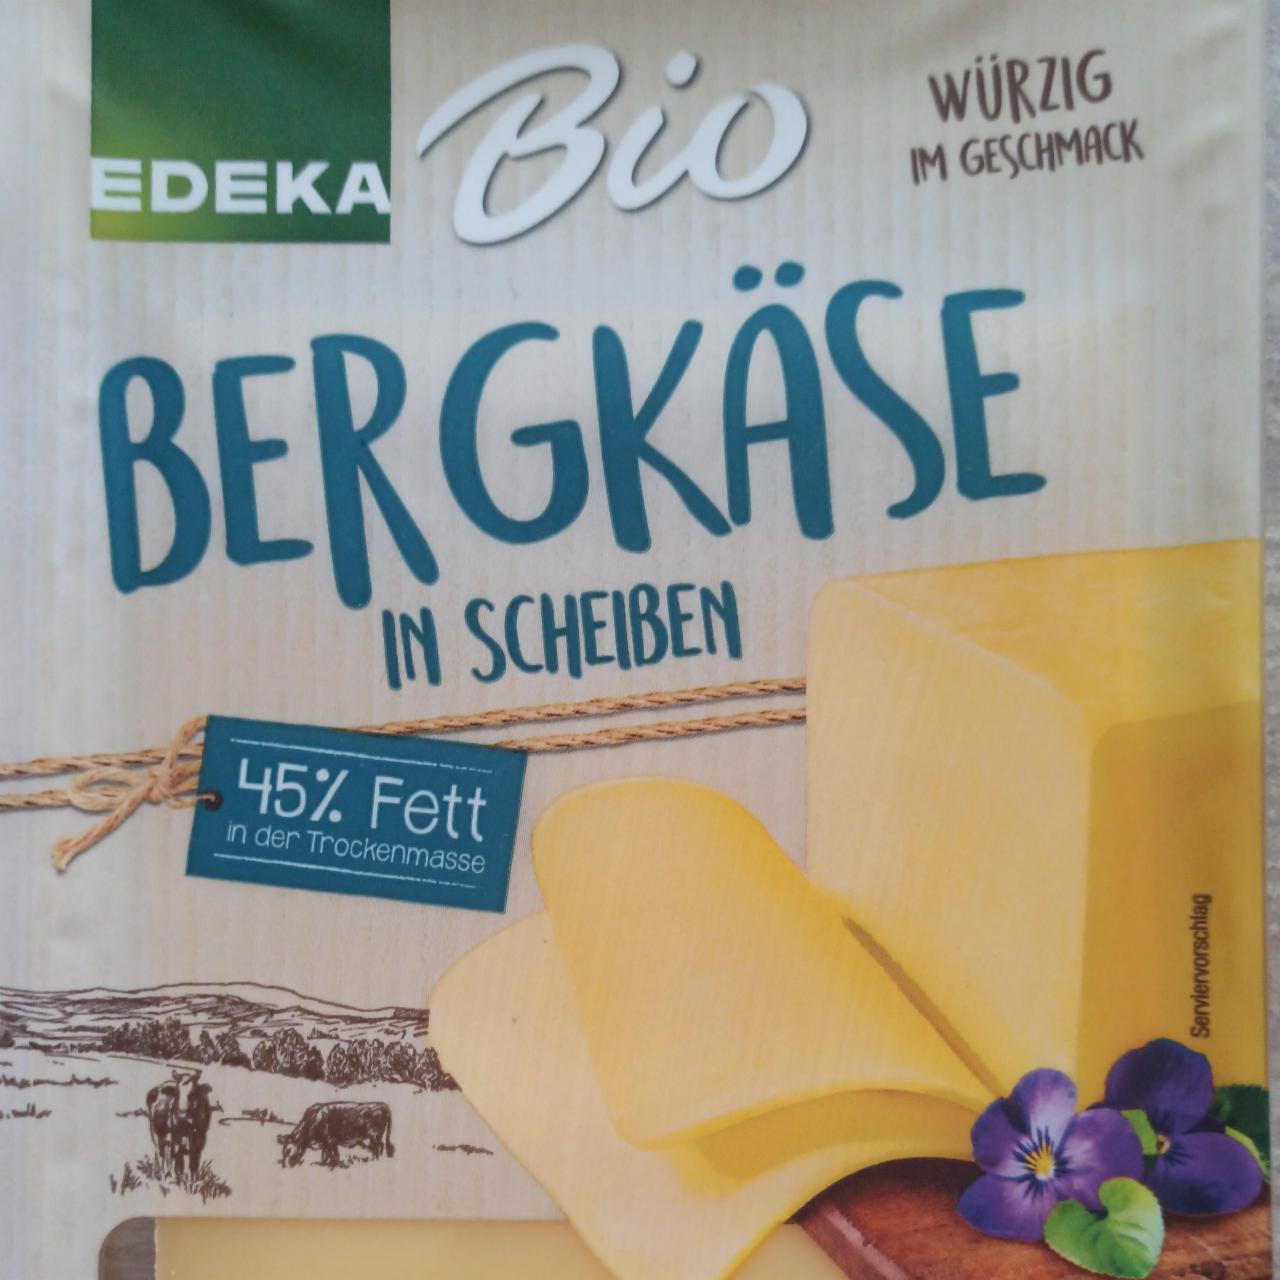 Fotografie - Bergkäse in Scheiben 45% Fett i. Tr. Edeka Bio